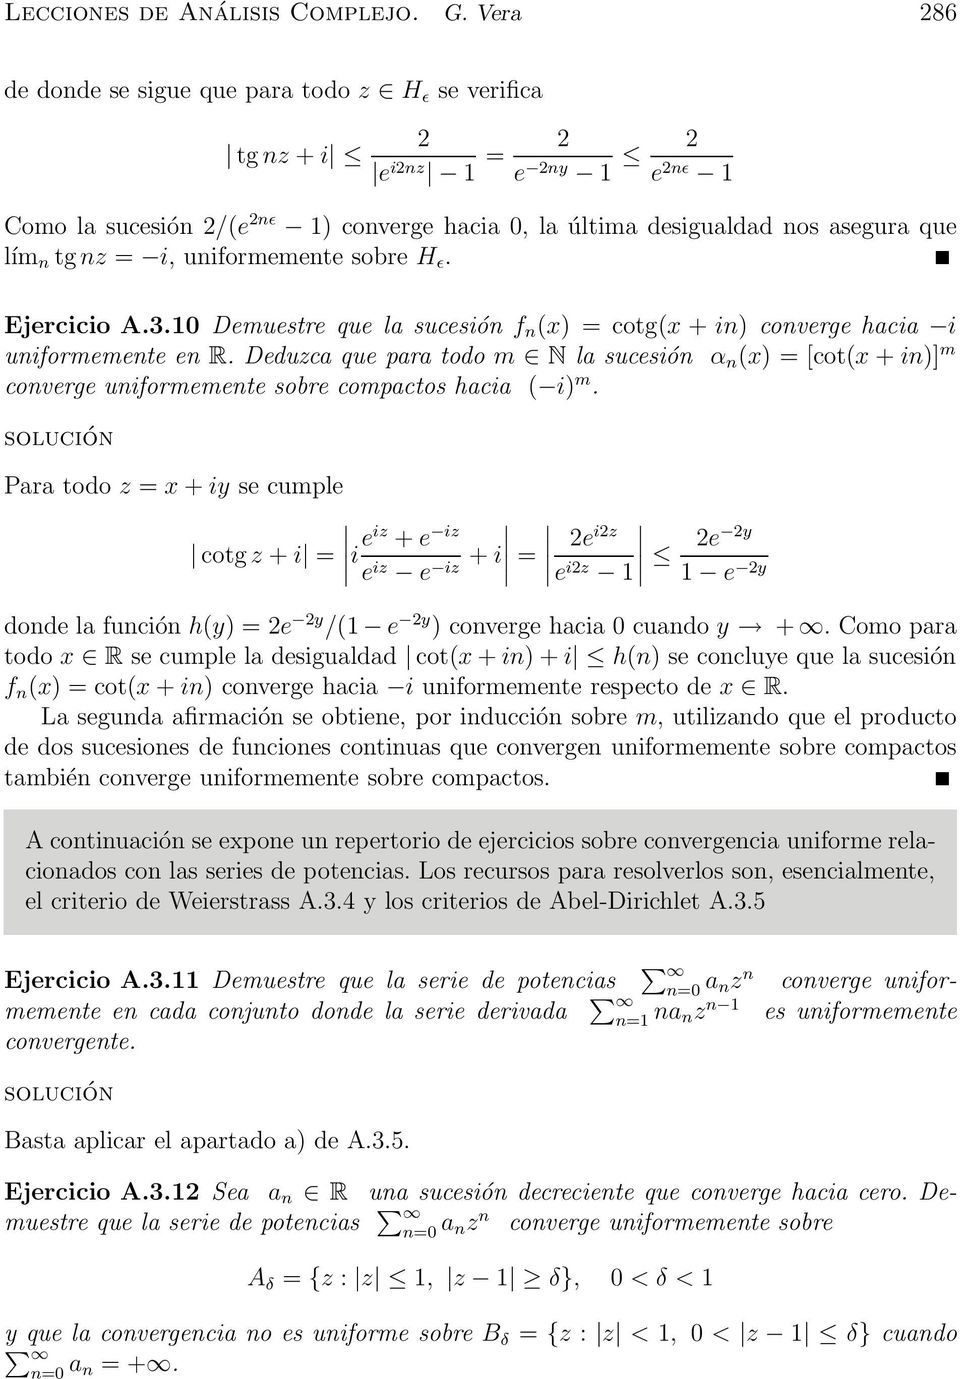 uniforeente sobre H ǫ. Ejercicio A.3.10 Deuestre que la sucesión f n x) = cotgx + in) converge hacia i uniforeente en R.